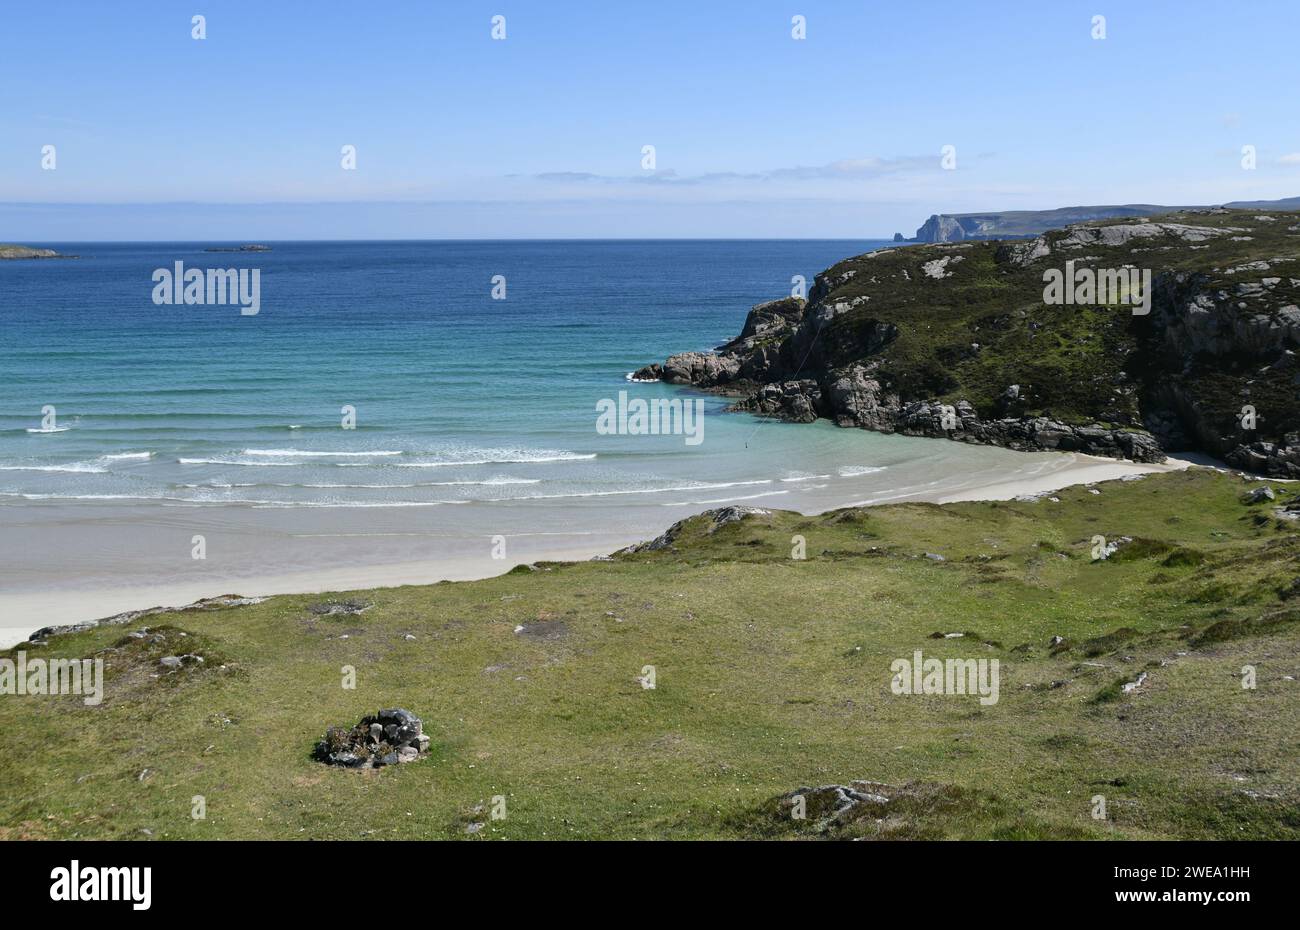 Acque turchesi e spiagge di sabbia bianca lungo la costa settentrionale della Scozia Foto Stock